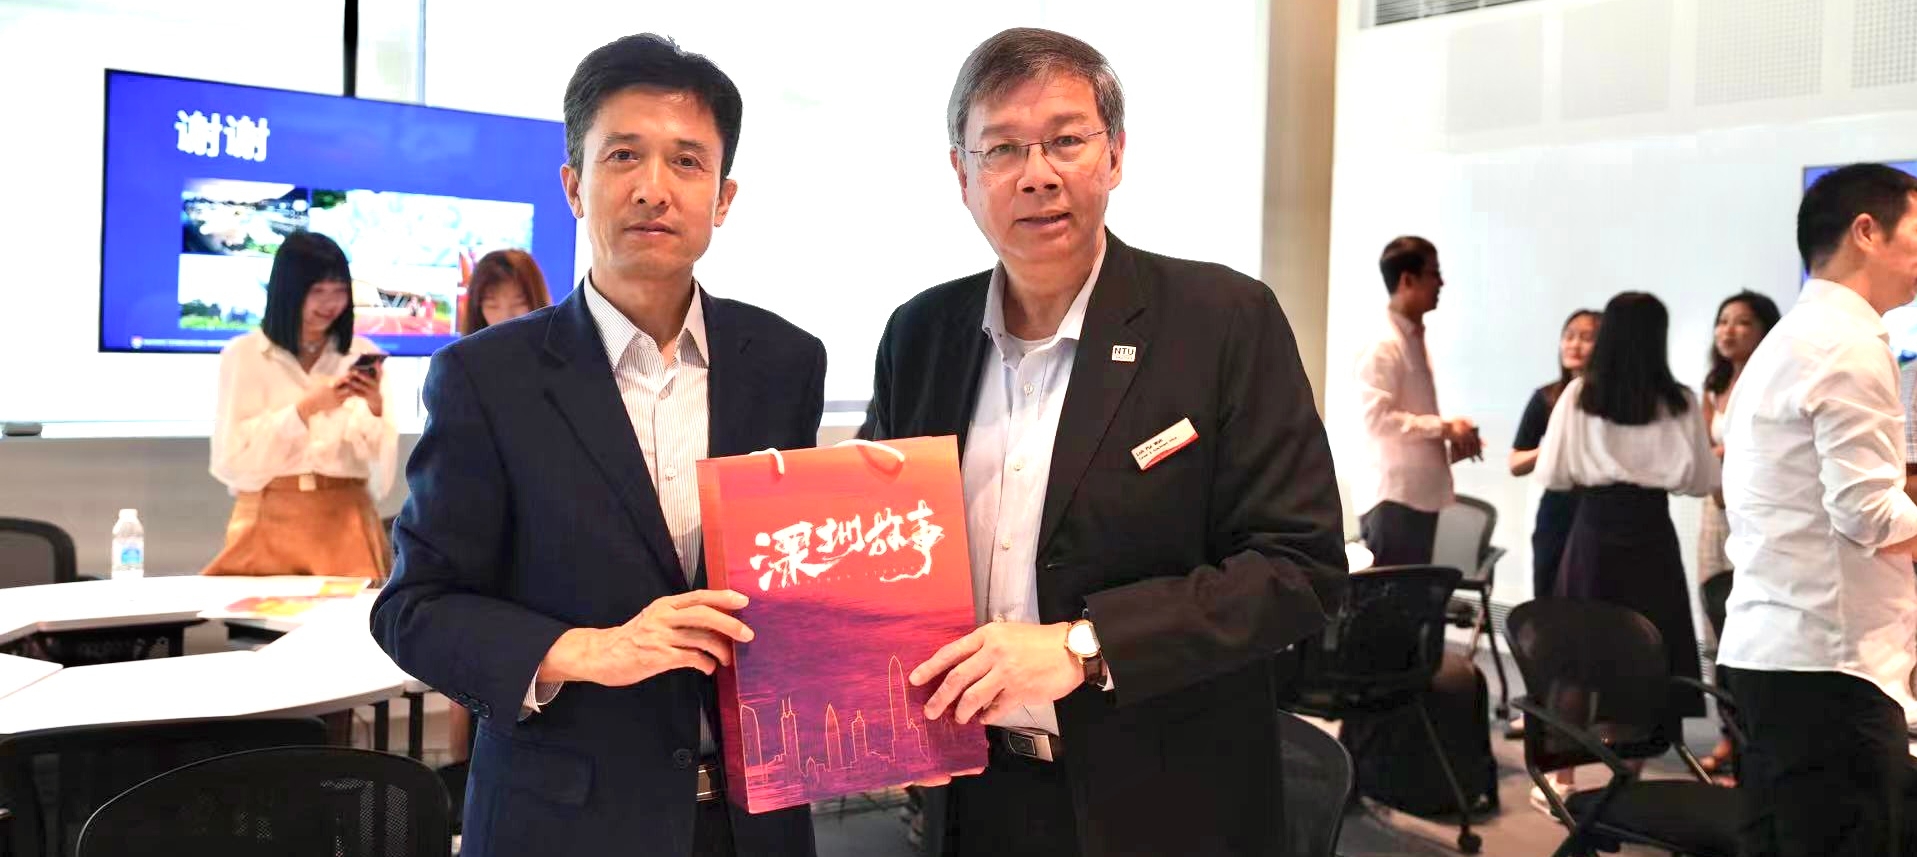 La iniciativa impulsa los intercambios culturales entre SZ y Singapur